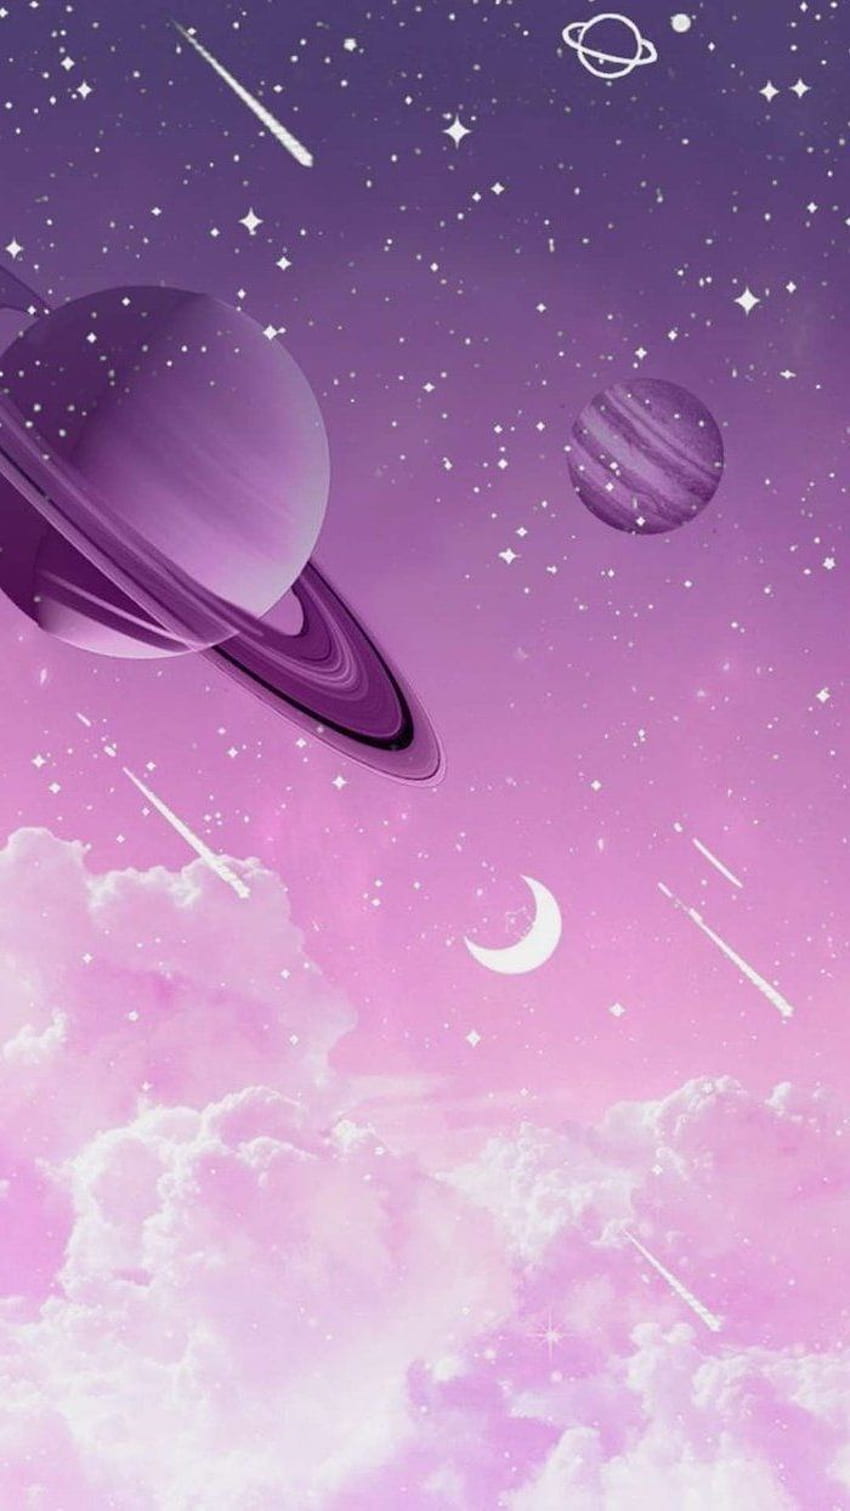 惑星と流れ星の漫画、外側 - 紫色の漫画空間の背景 - & 背景、ピンクと紫の空間 HD電話の壁紙